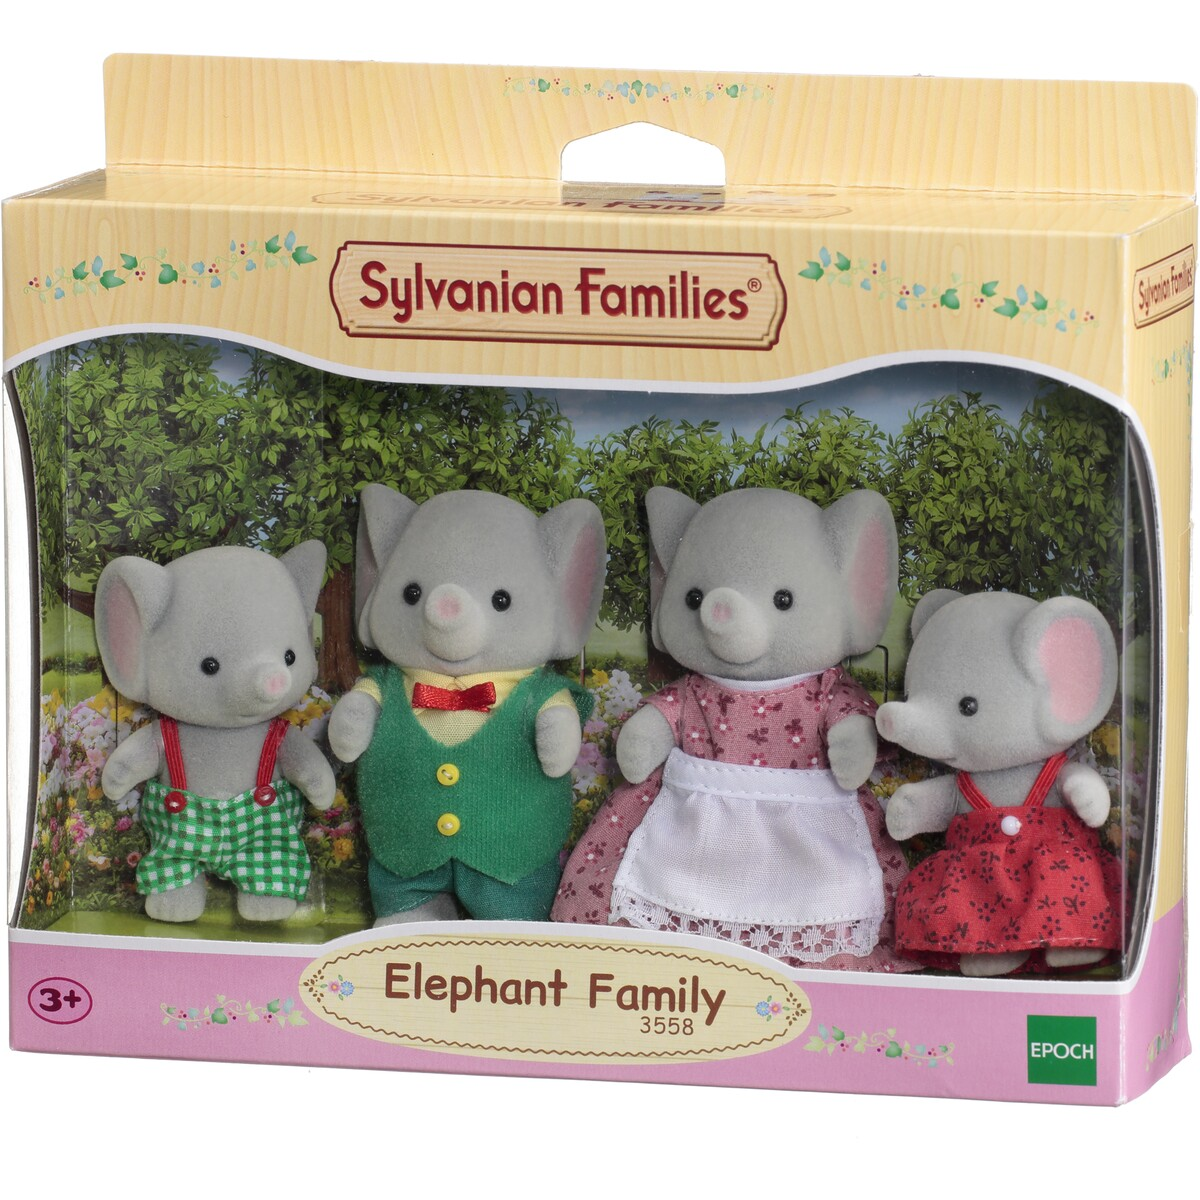 Sylvanian Families 3558 Elephant Family in box